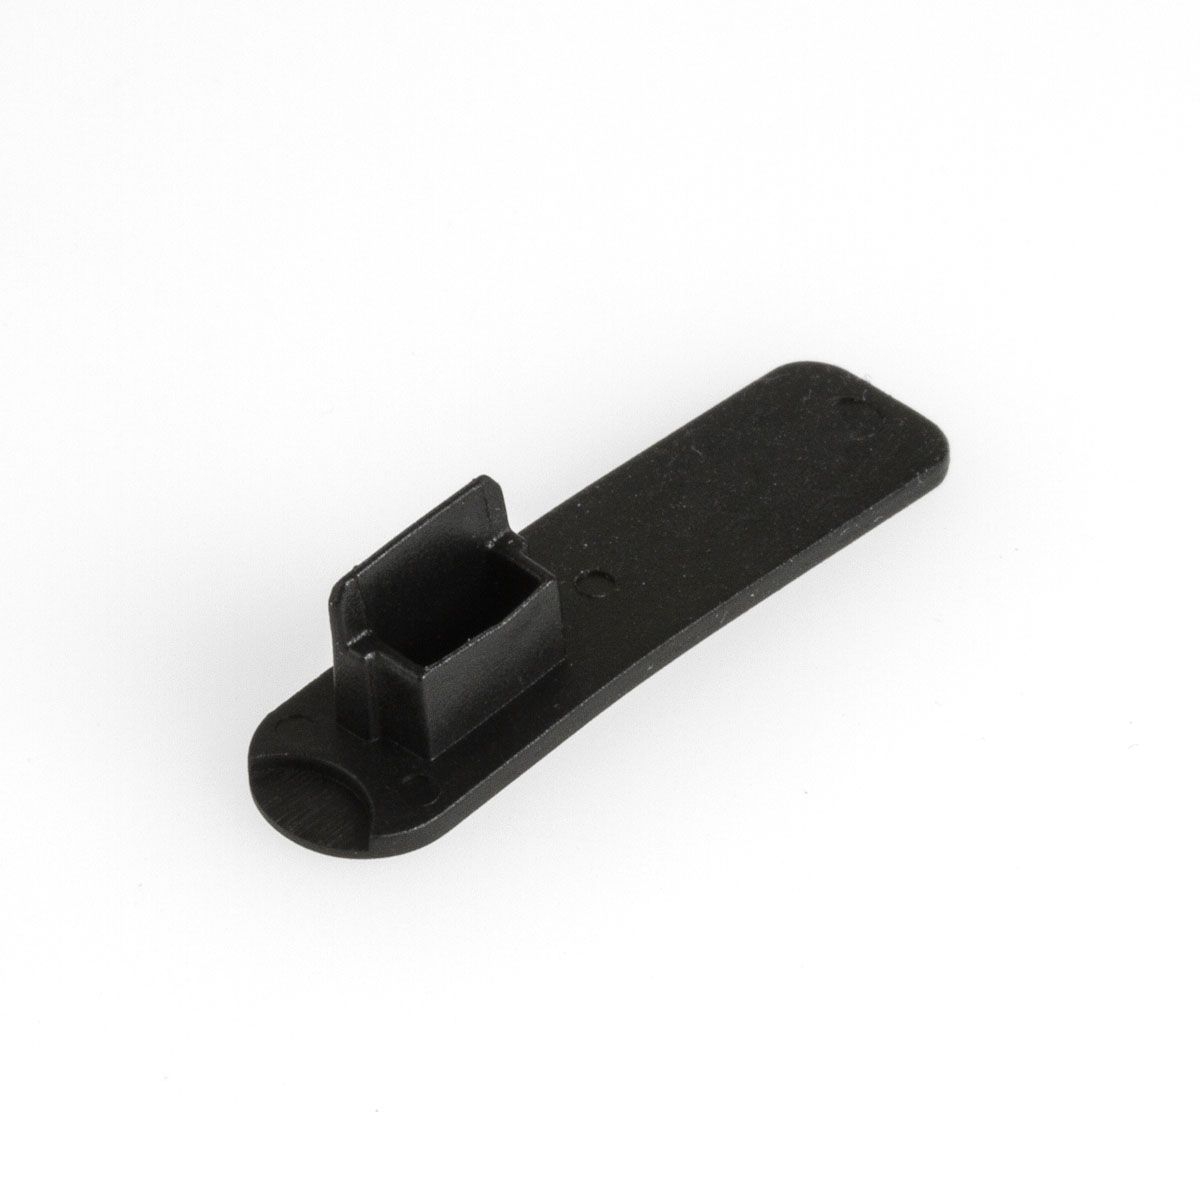 Protection contre poussière pour USB 2.0 Mini B femelle avec manette (50 capuchons)